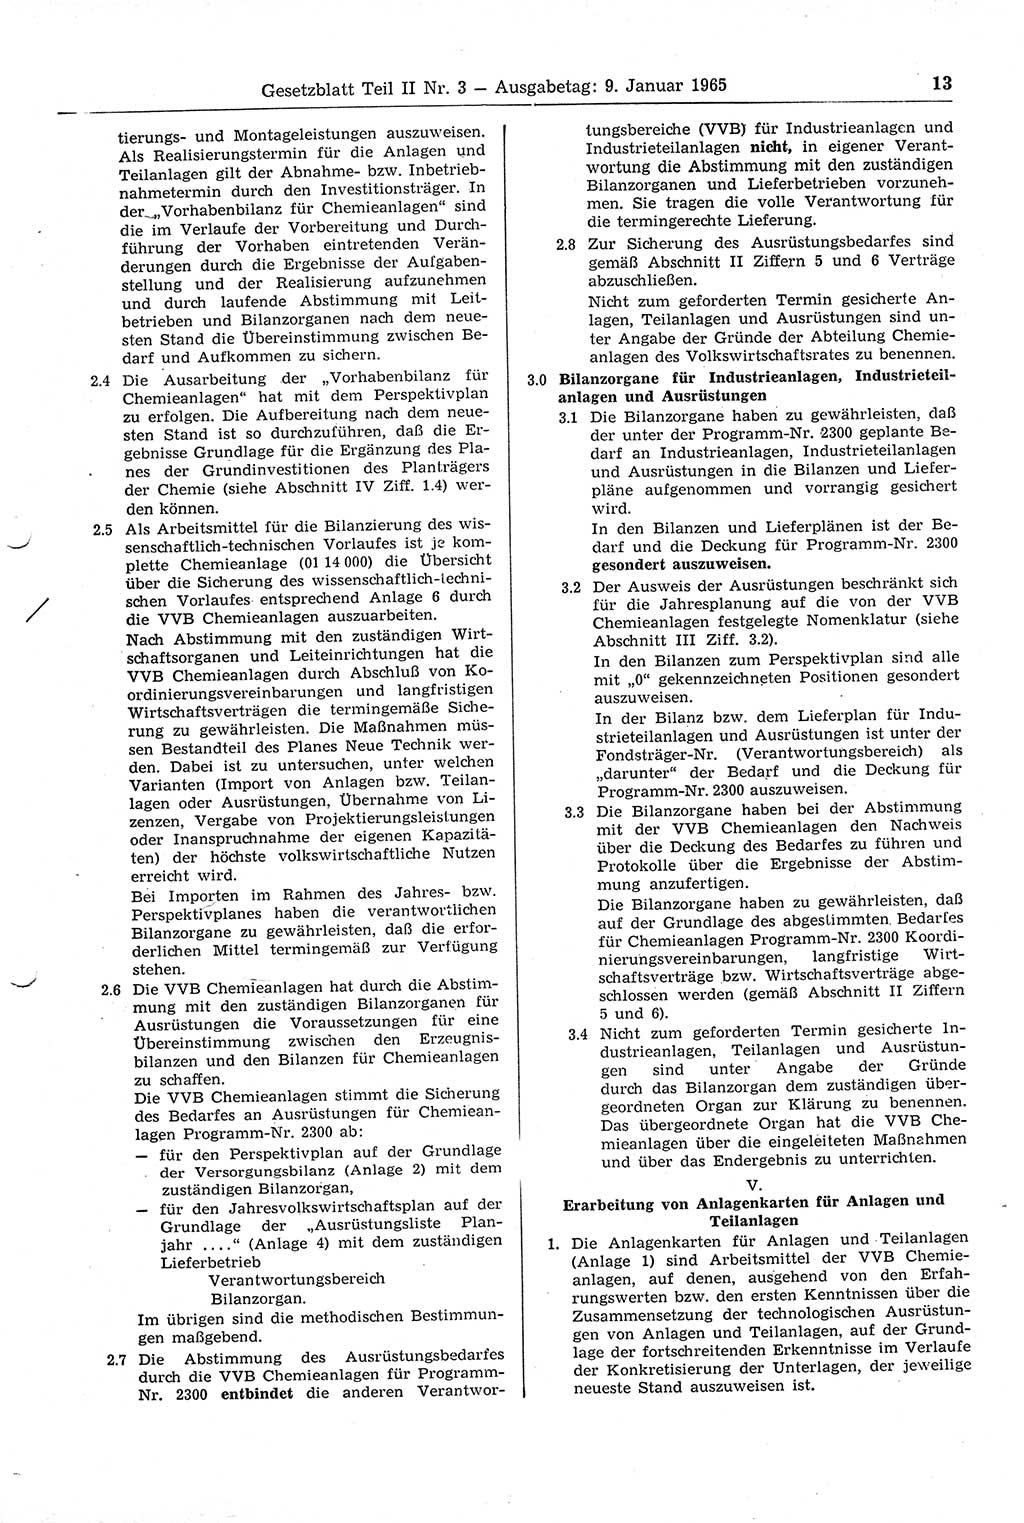 Gesetzblatt (GBl.) der Deutschen Demokratischen Republik (DDR) Teil ⅠⅠ 1965, Seite 13 (GBl. DDR ⅠⅠ 1965, S. 13)